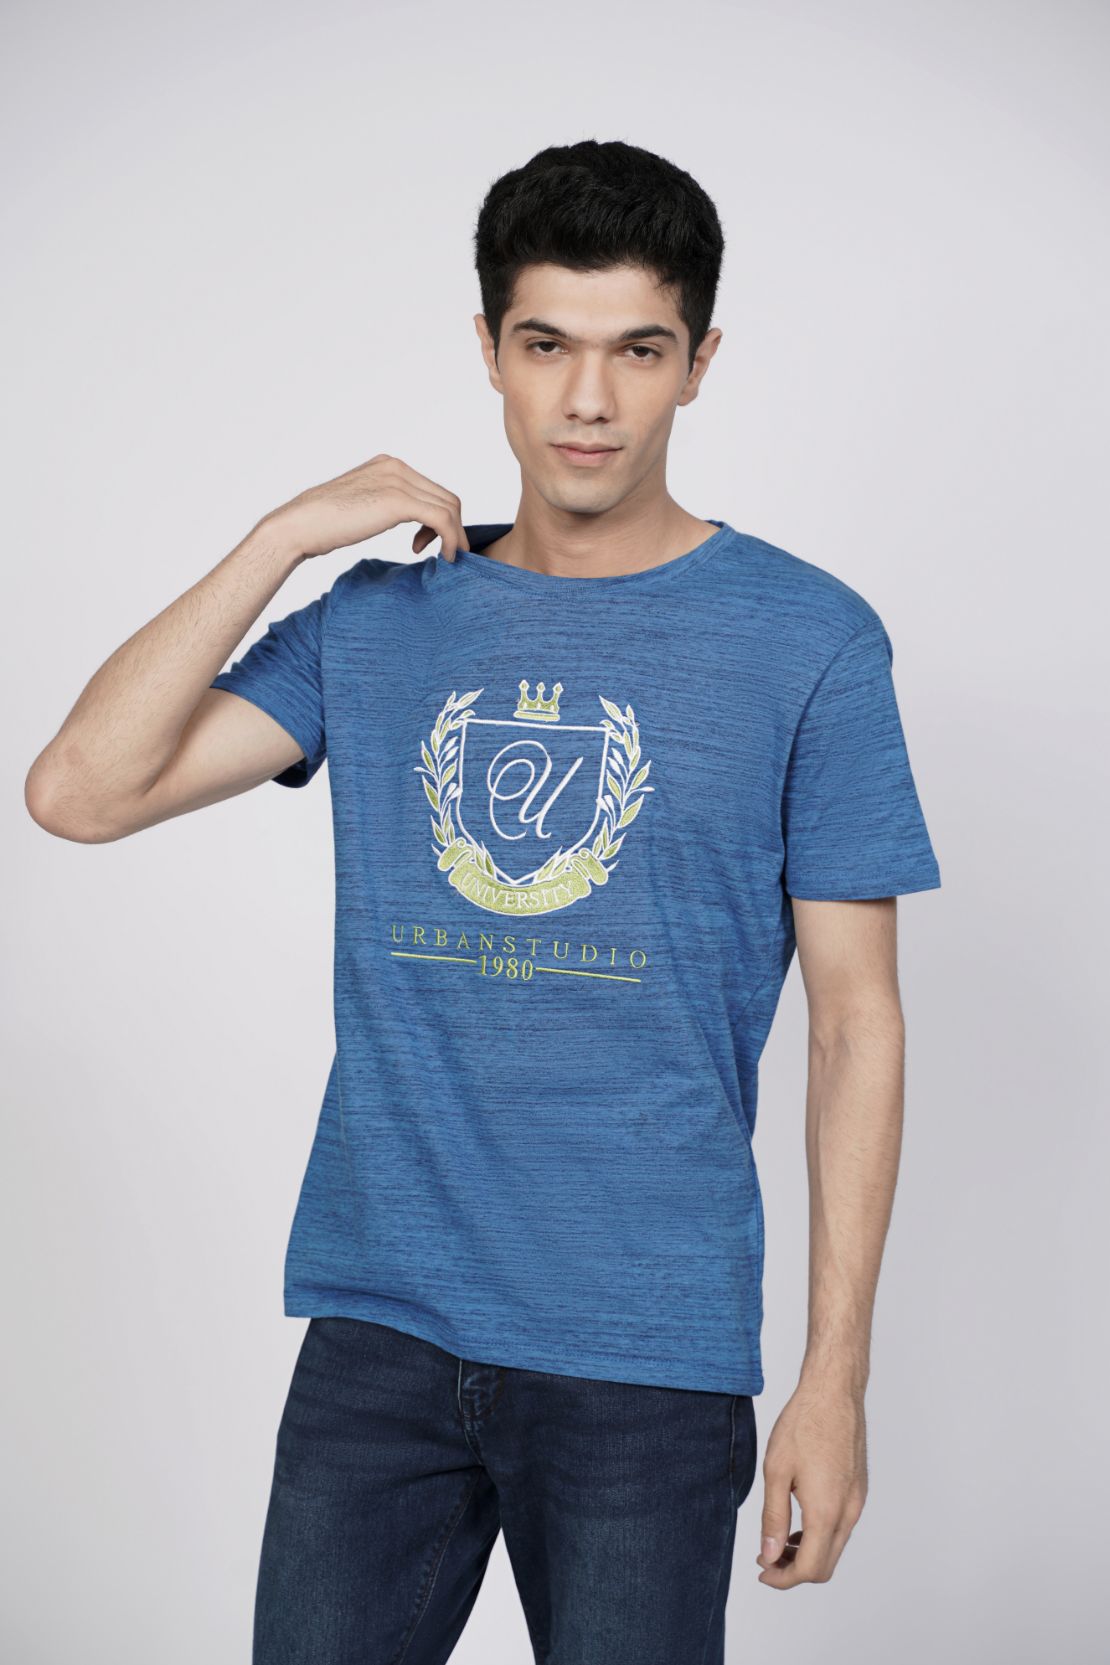 Blue T Shirt